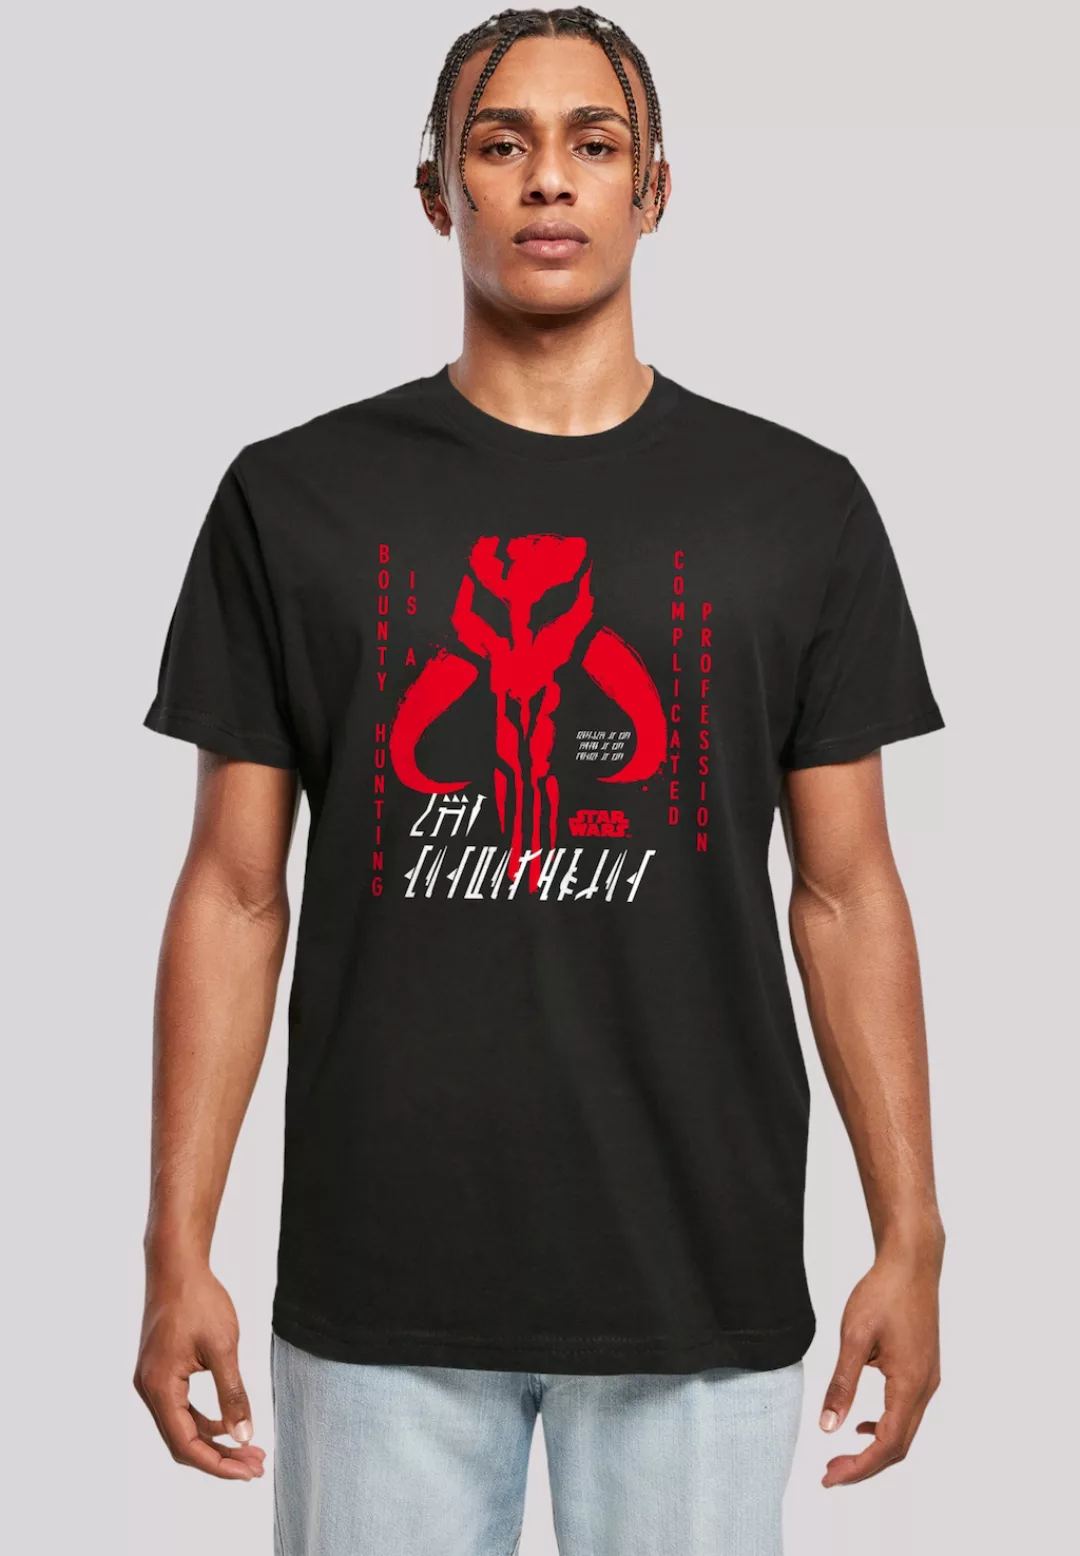 F4NT4STIC T-Shirt "Star Wars The Mandalorian Complicated Profession", Premi günstig online kaufen